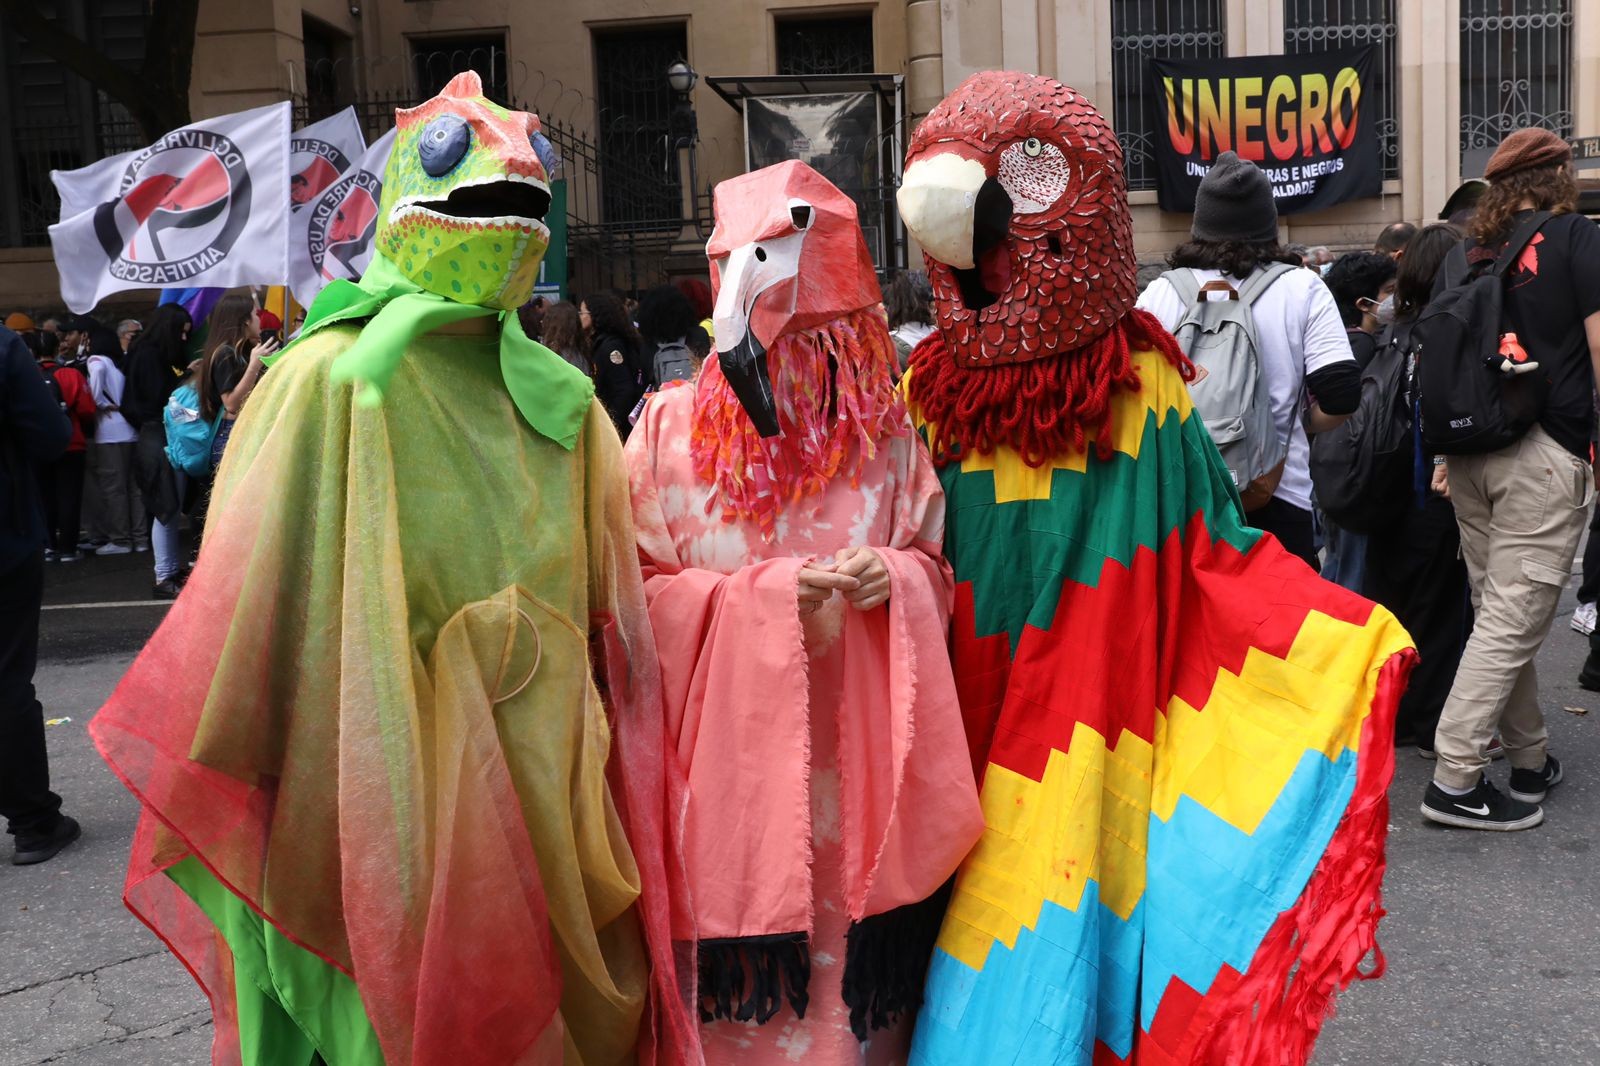 
Fantasiados, integrantes de movimento participam de ato pela democracia em SP representando animais como seres de direito